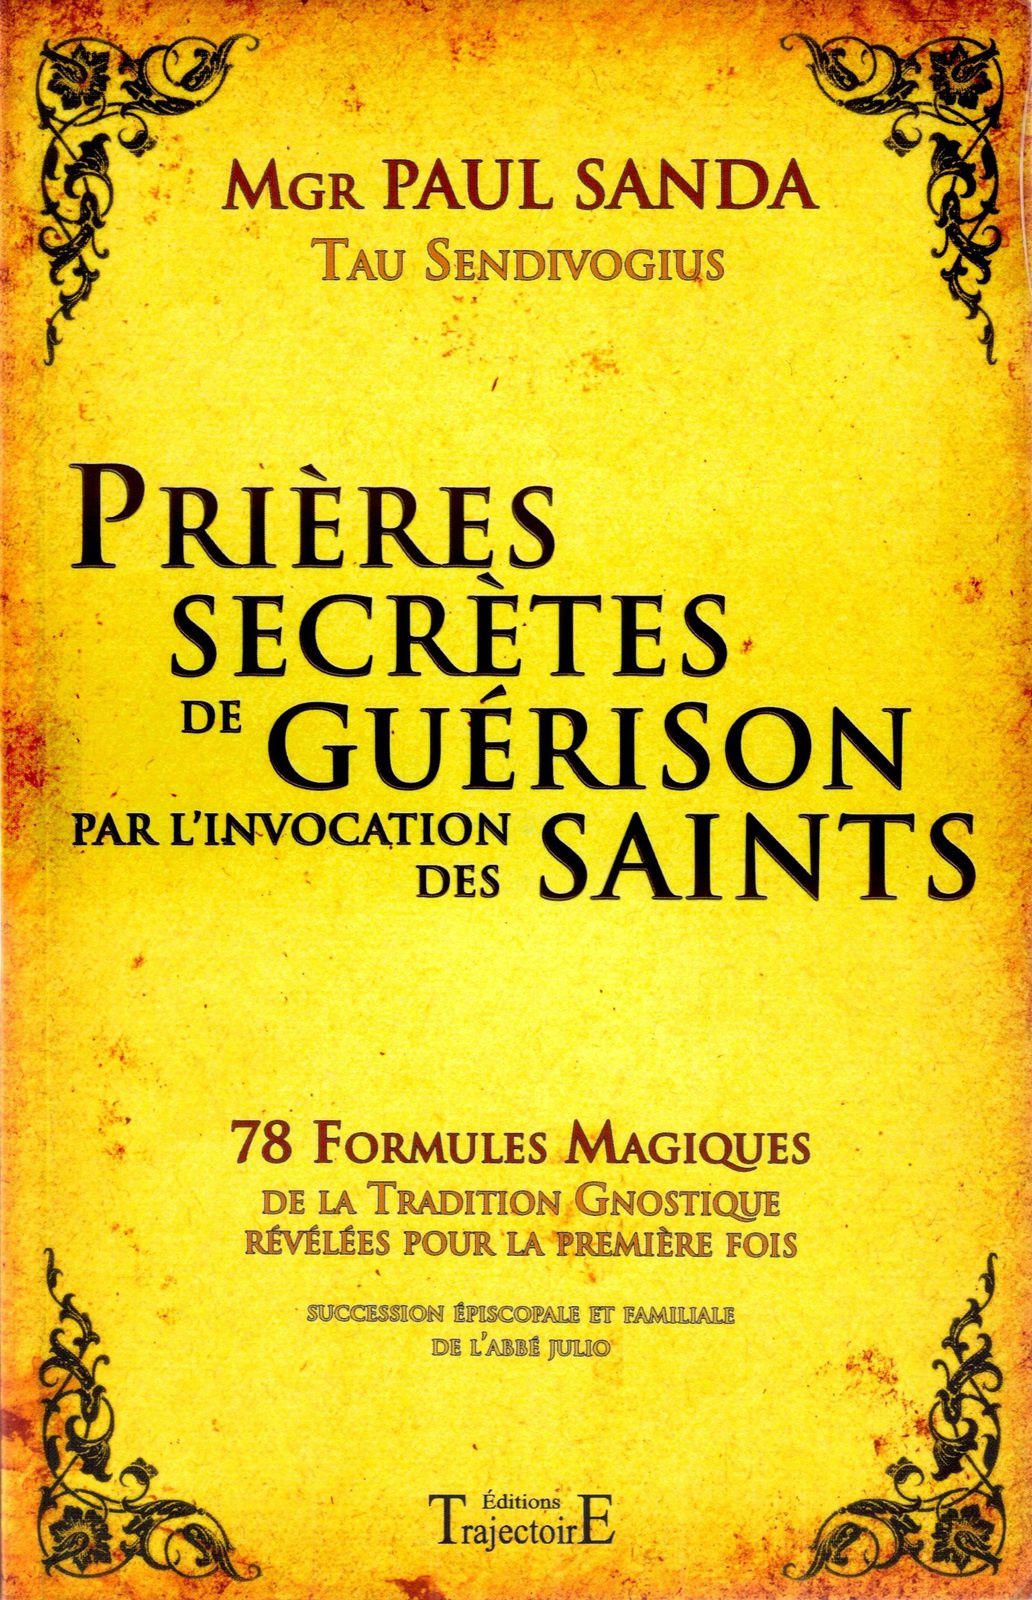 Prières secrètes de guérison par l'invocation des saints - Mgr Paul SANDA  (Tau Sendivogius) - Magie du Livre - Livres de Magie